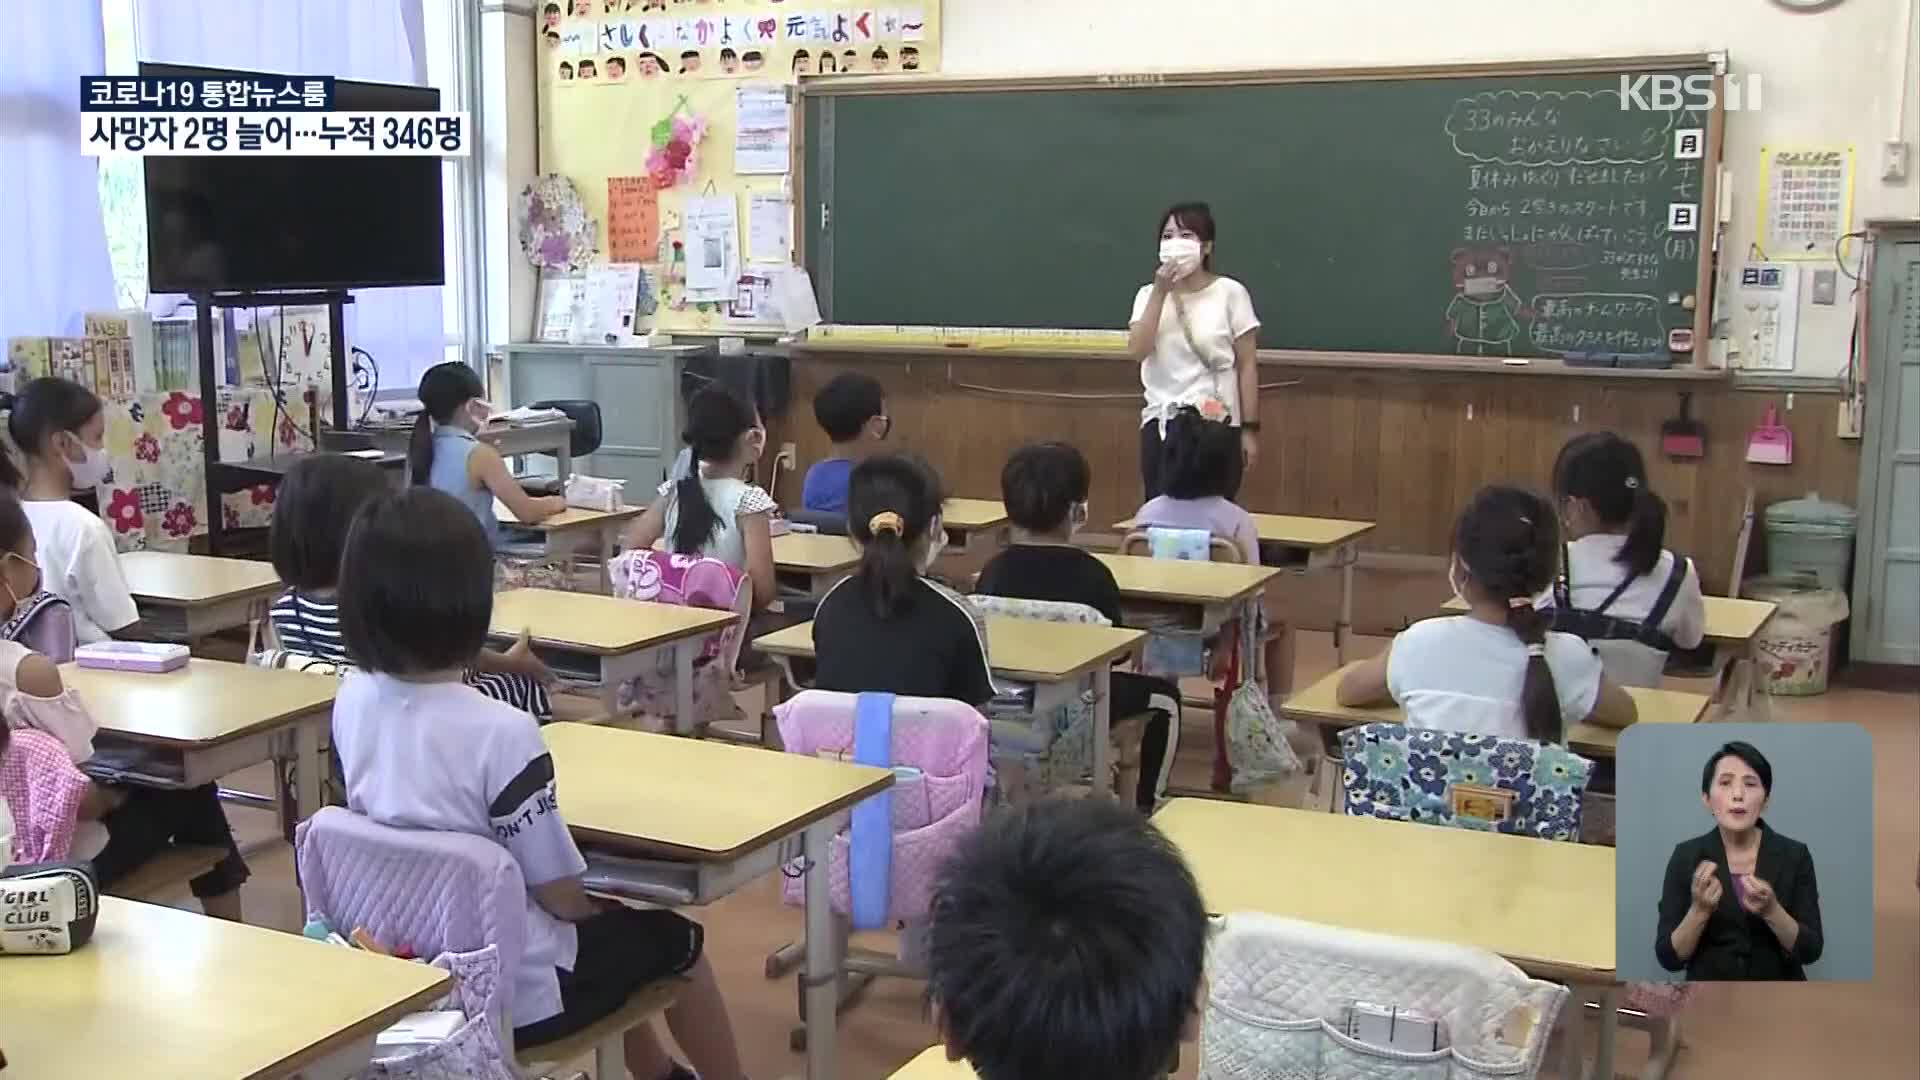 일본, 코로나19 스트레스로 ‘학교 괴롭힘’ 증가 우려